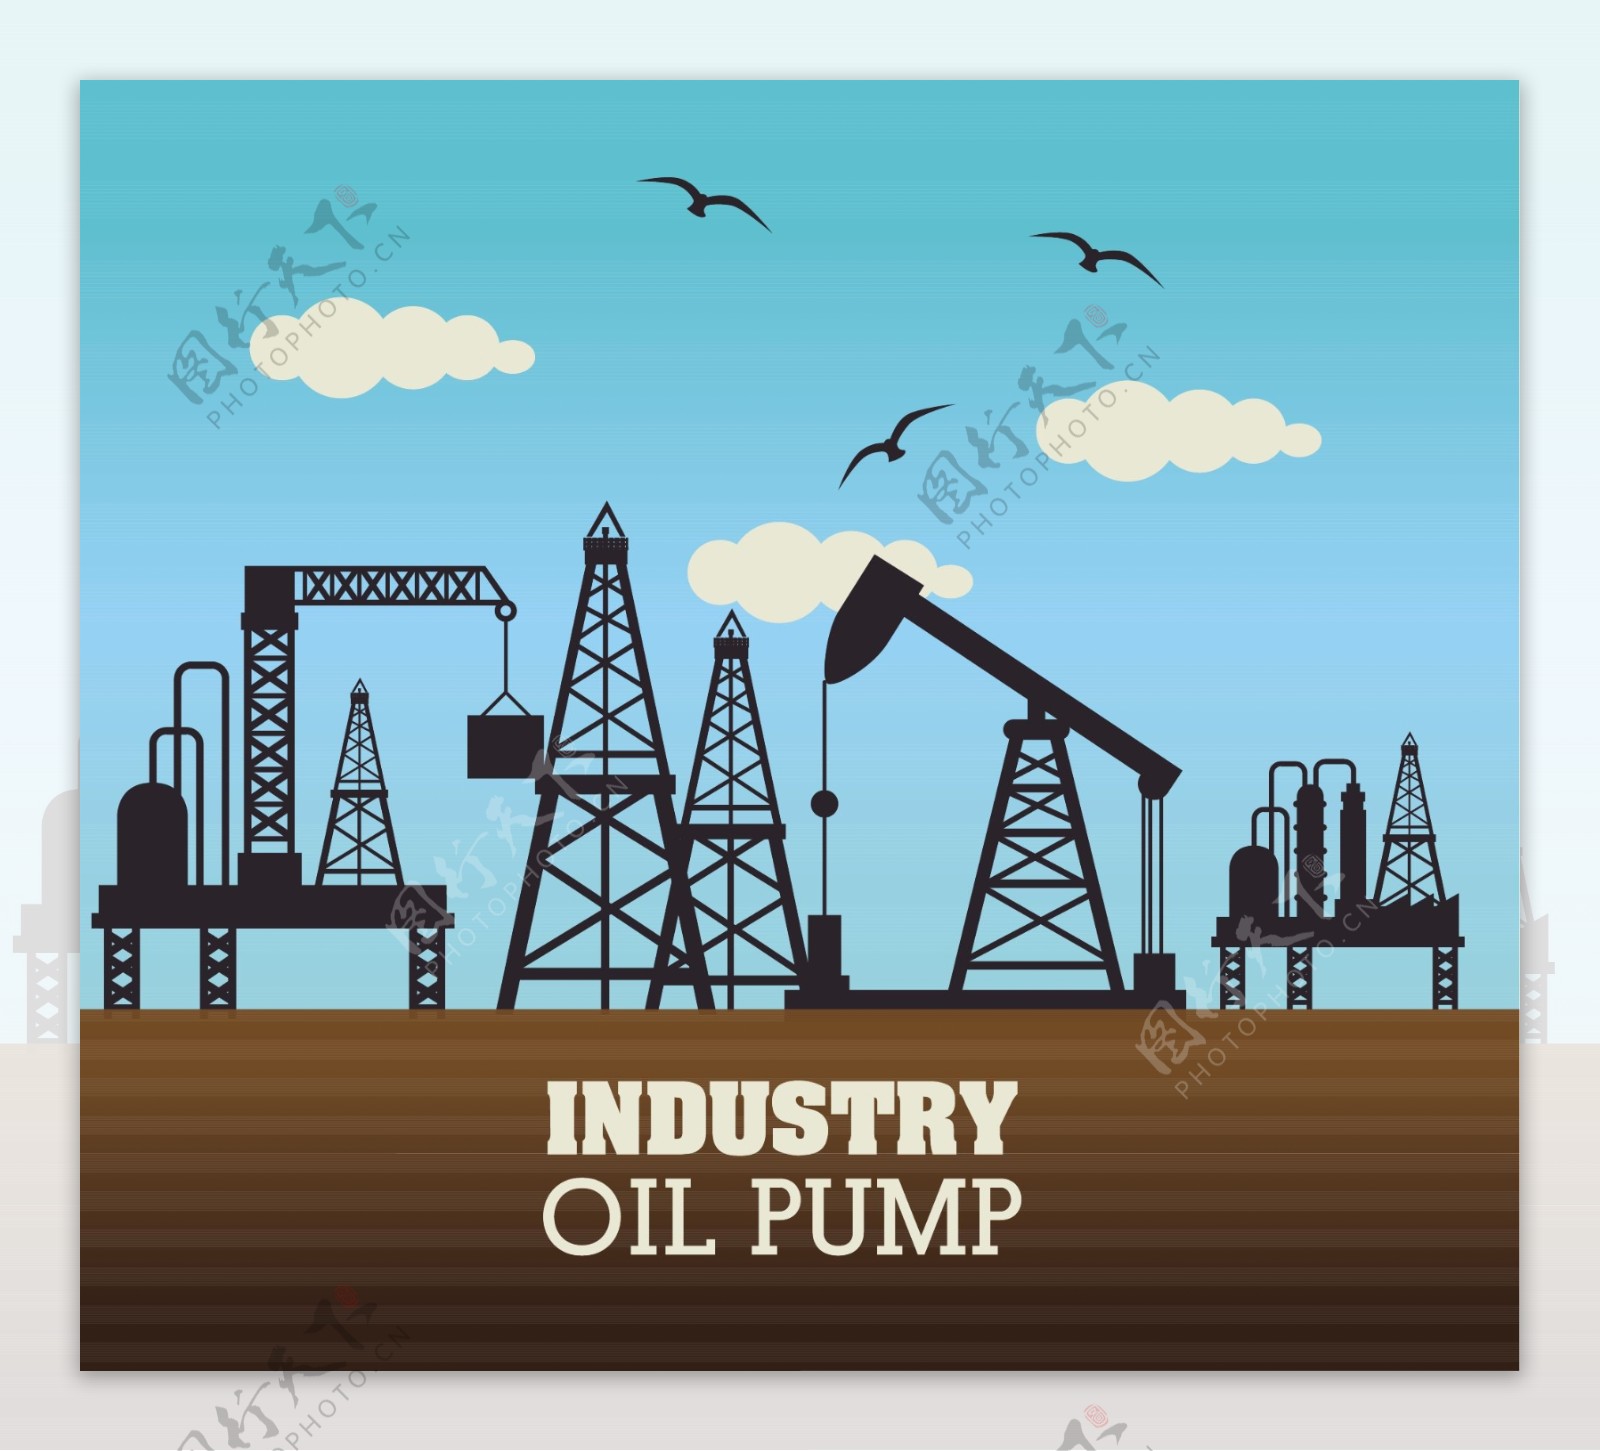 能源石油制造行业矢量图制作